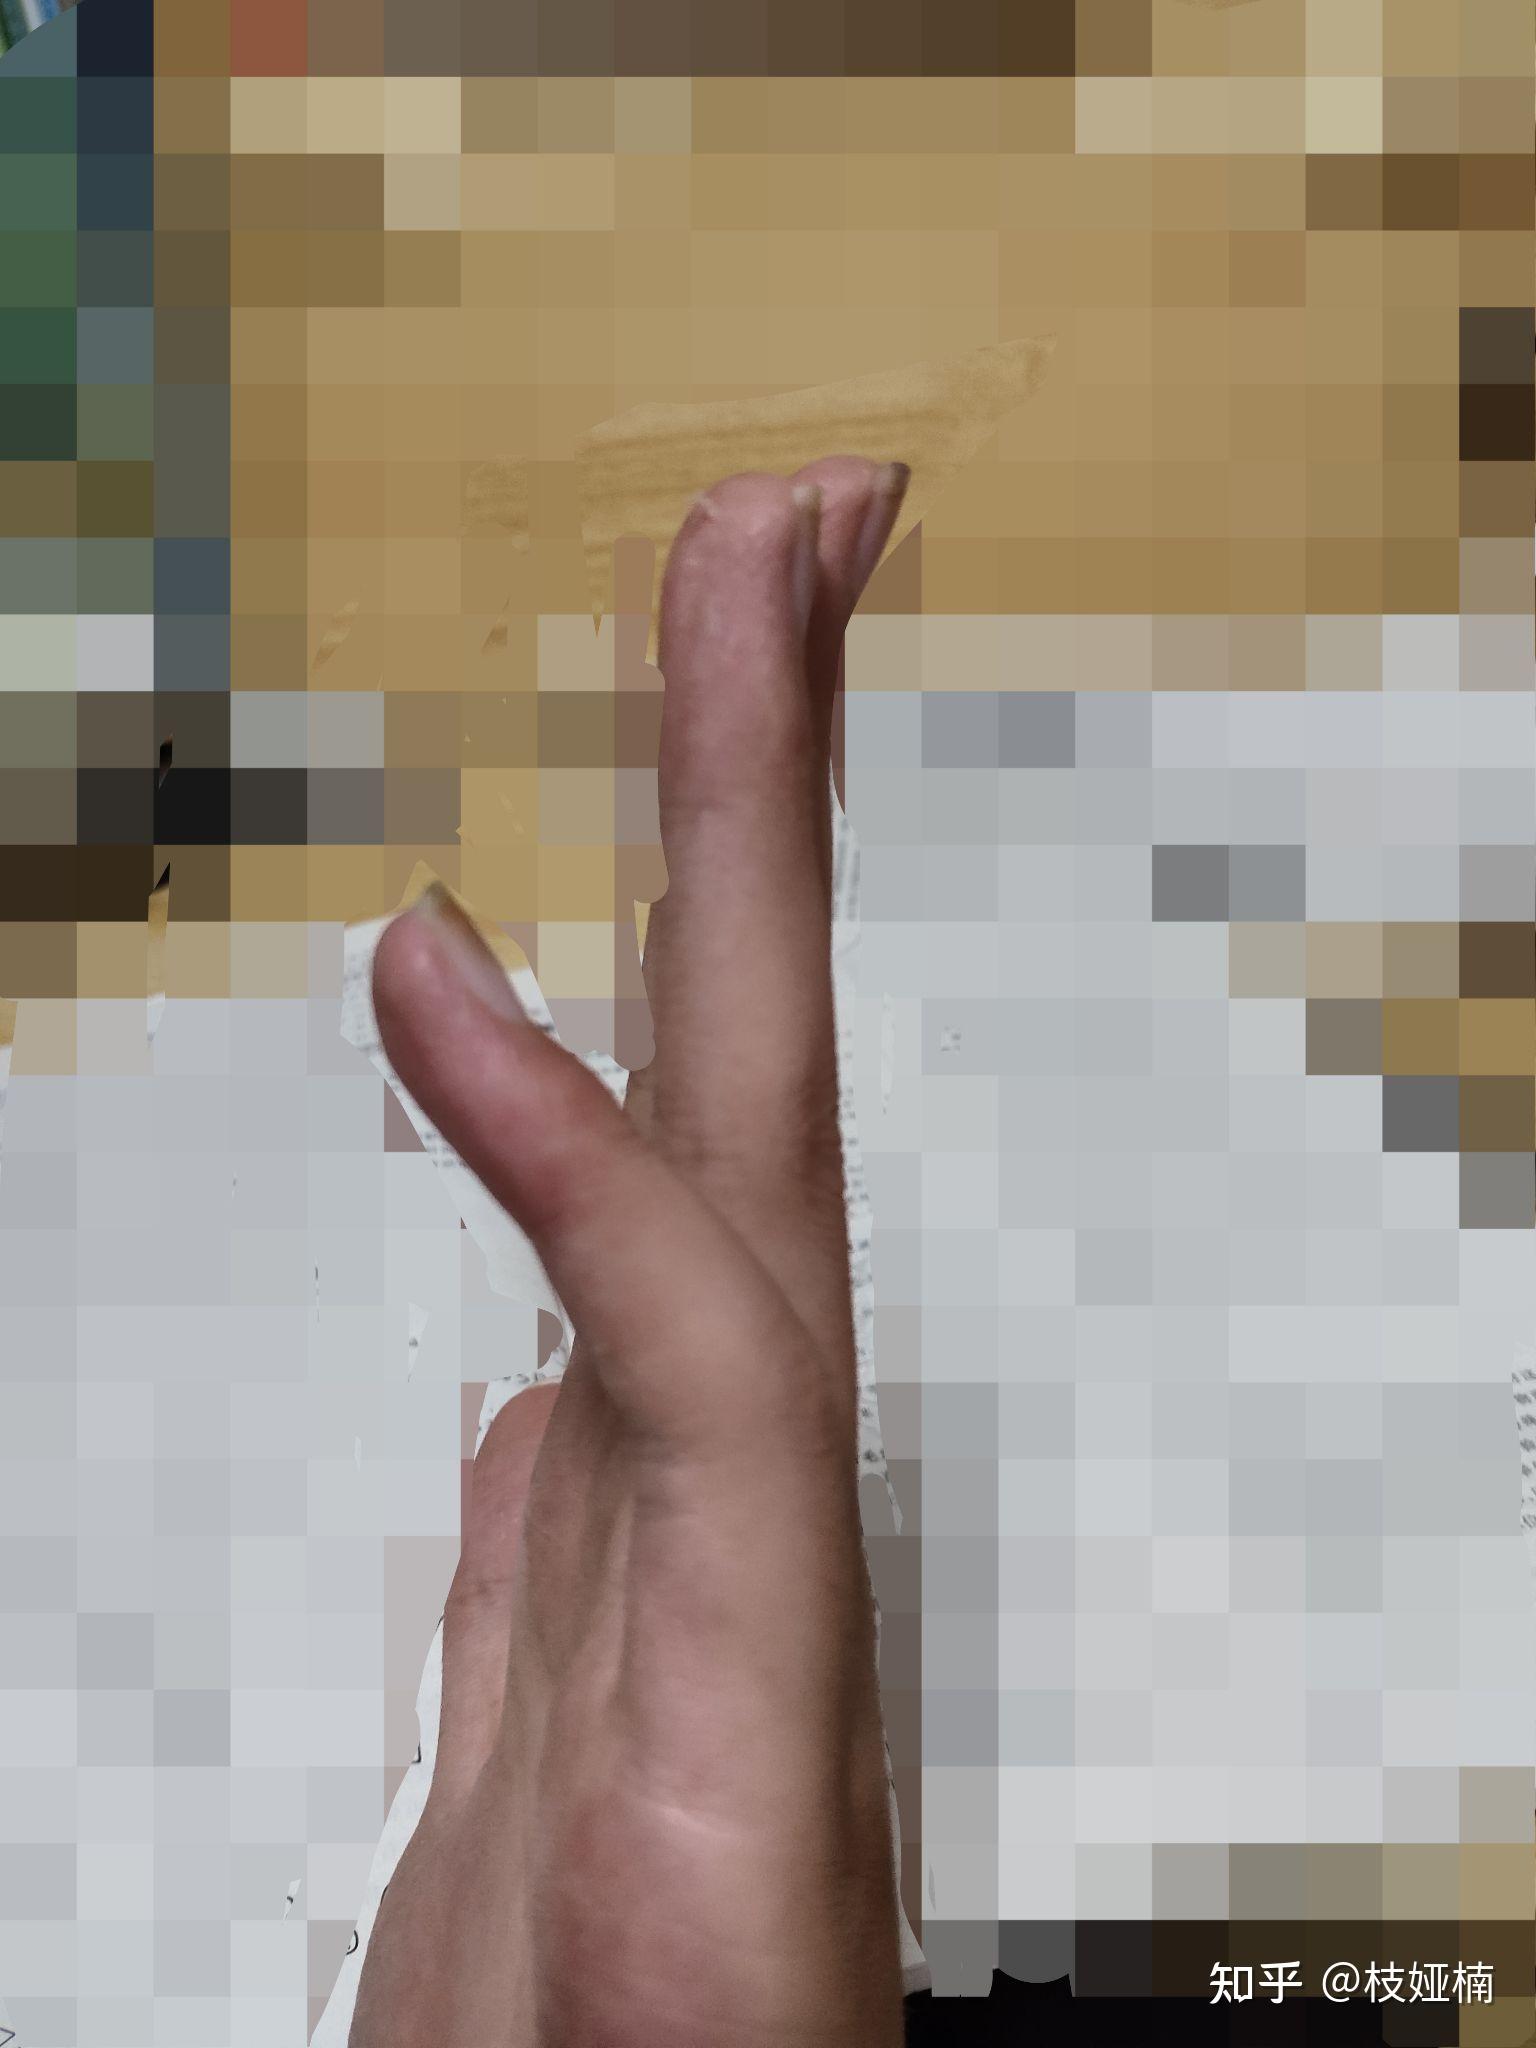 手指脱臼的症状图片图片